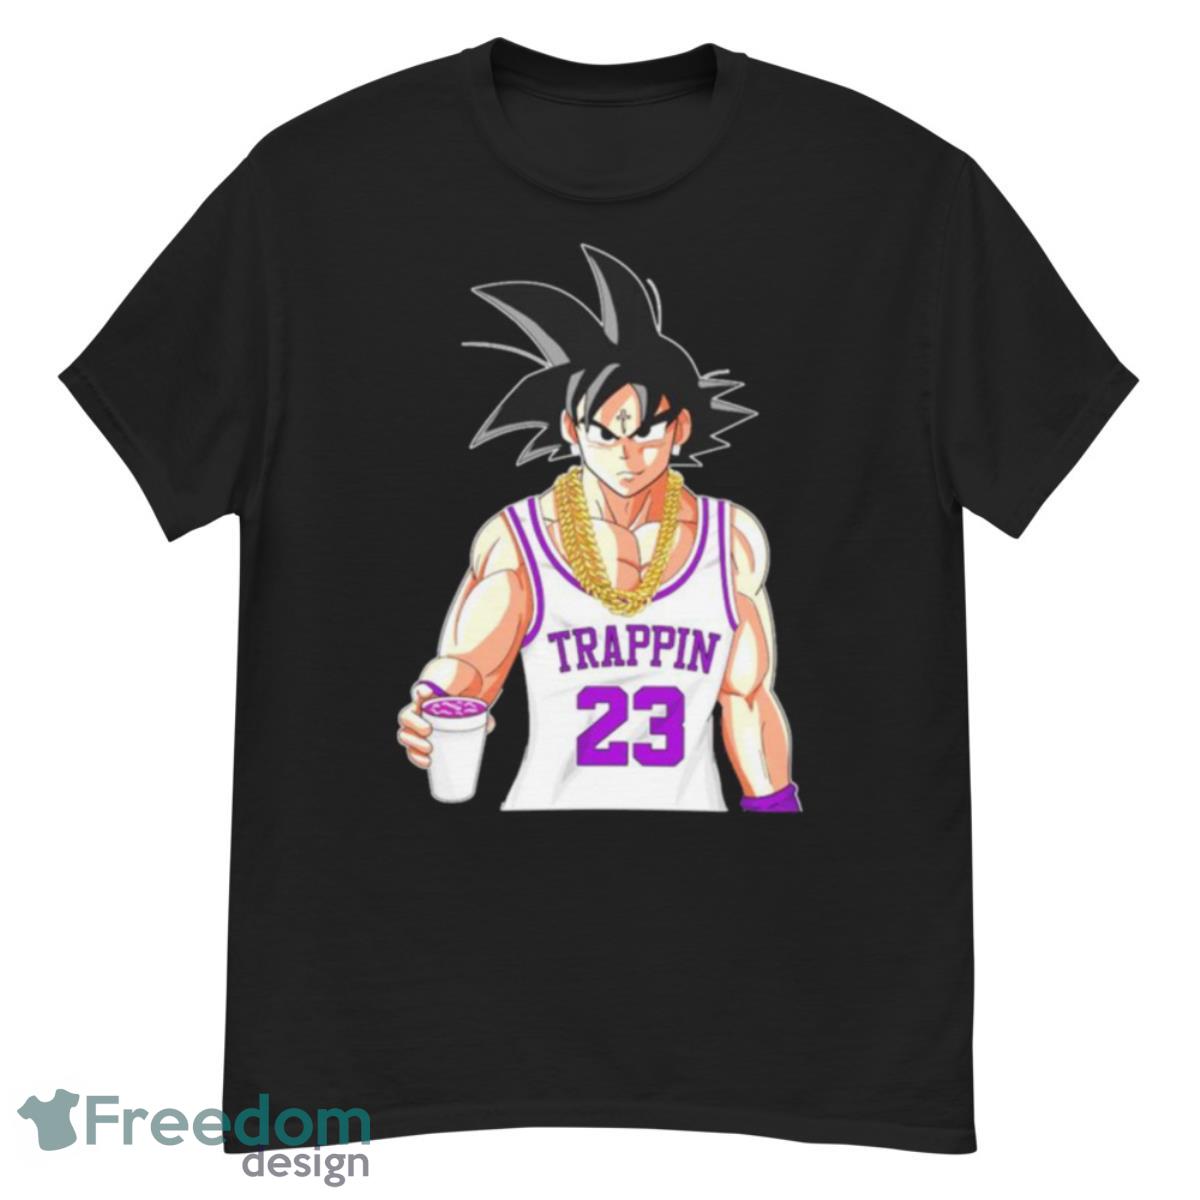 Son Goku Lean Trappin 23 shirt - G500 Men’s Classic T-Shirt